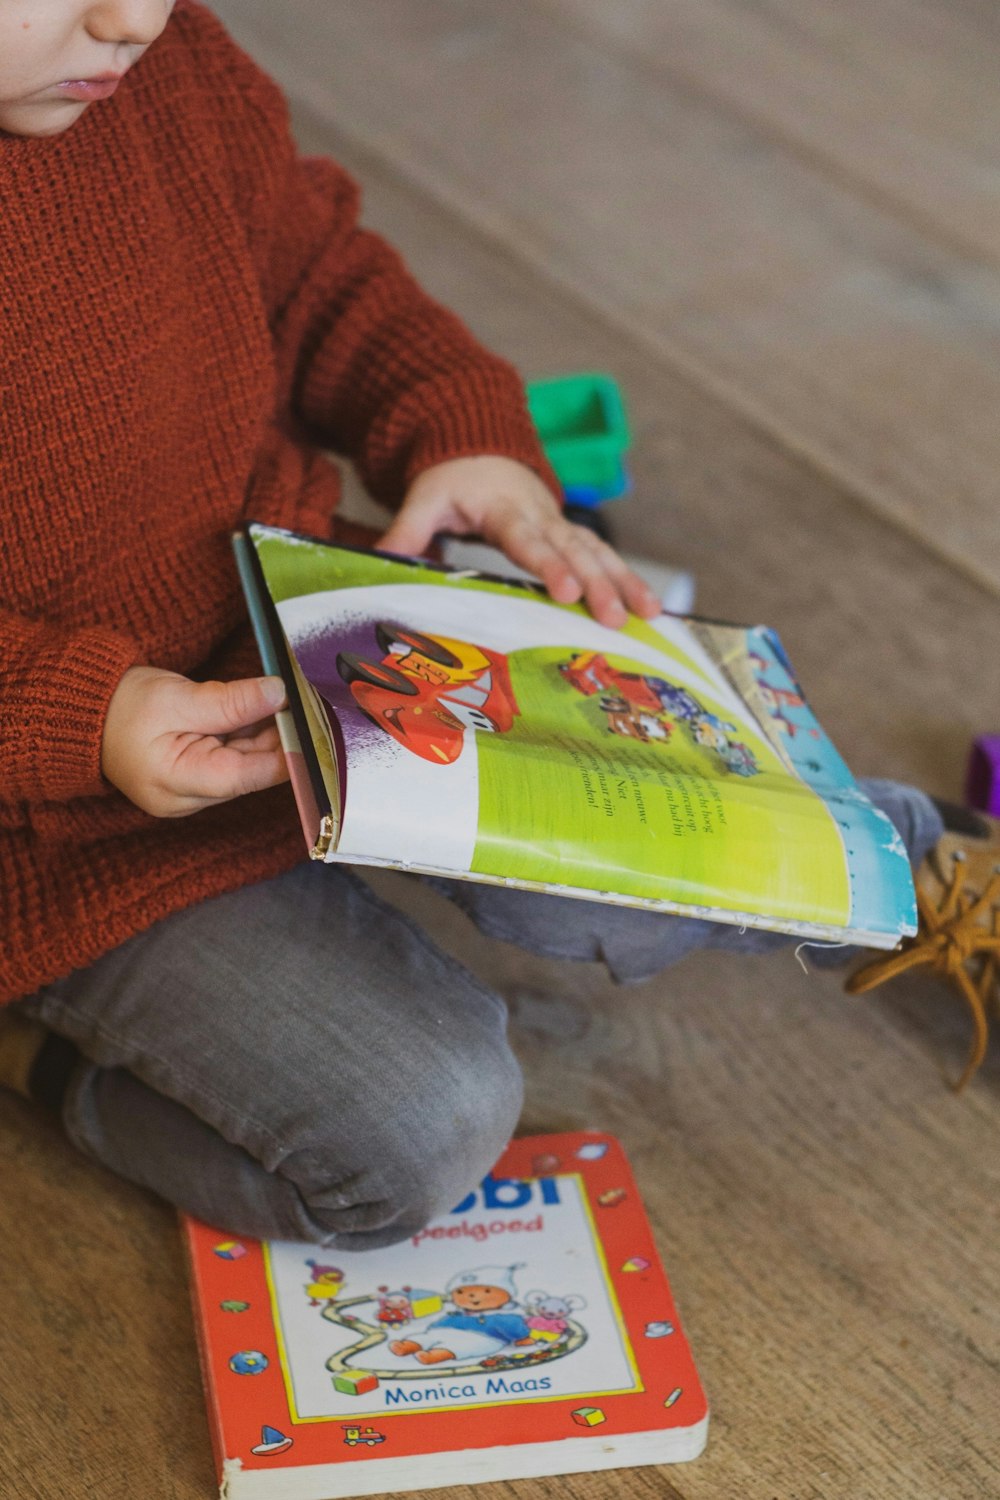 niño pequeño sosteniendo el libro de cuentos